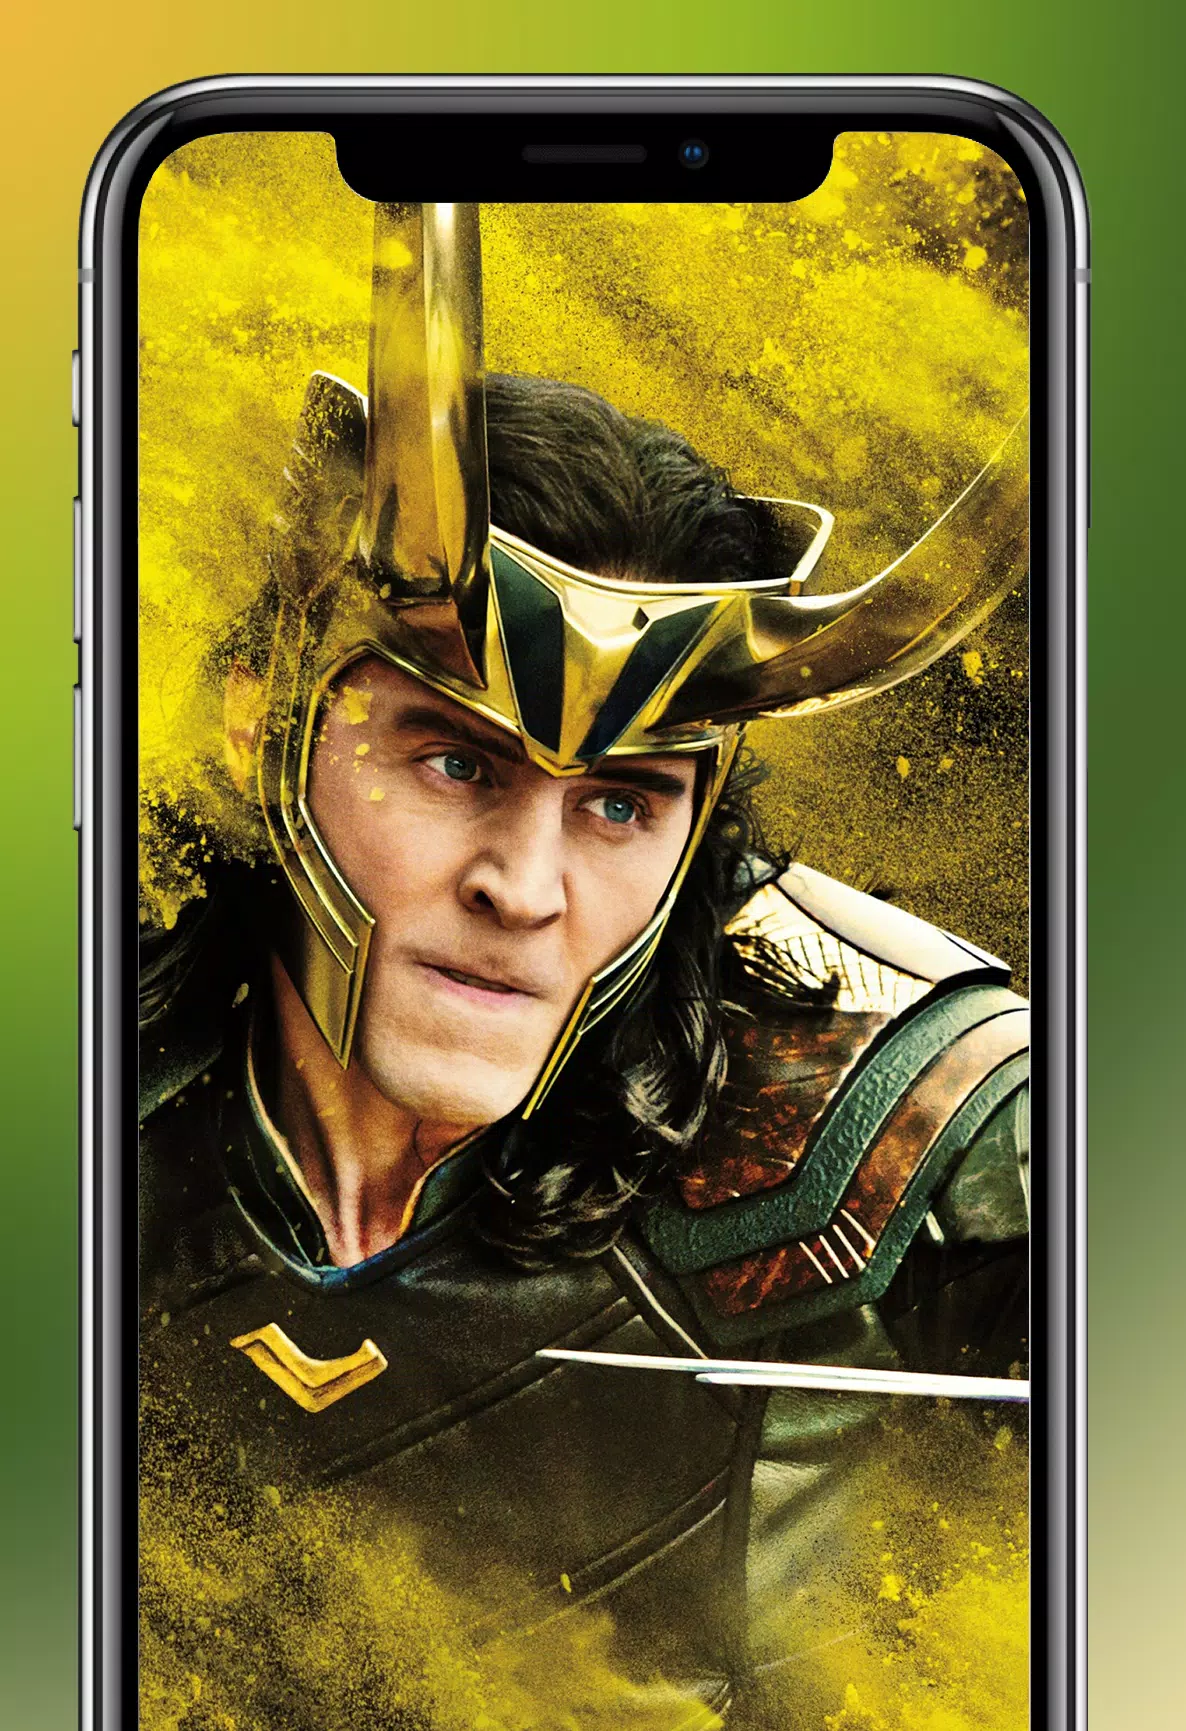 Tận hưởng màn hình Android hiển thị theo phong cách Loki với bộ ảnh nền 4k độc đáo. Sự tinh tế và sang trọng của những bức hình này chắc chắn sẽ khiến bạn trở thành tâm điểm của mọi cuộc hòa nhạc.